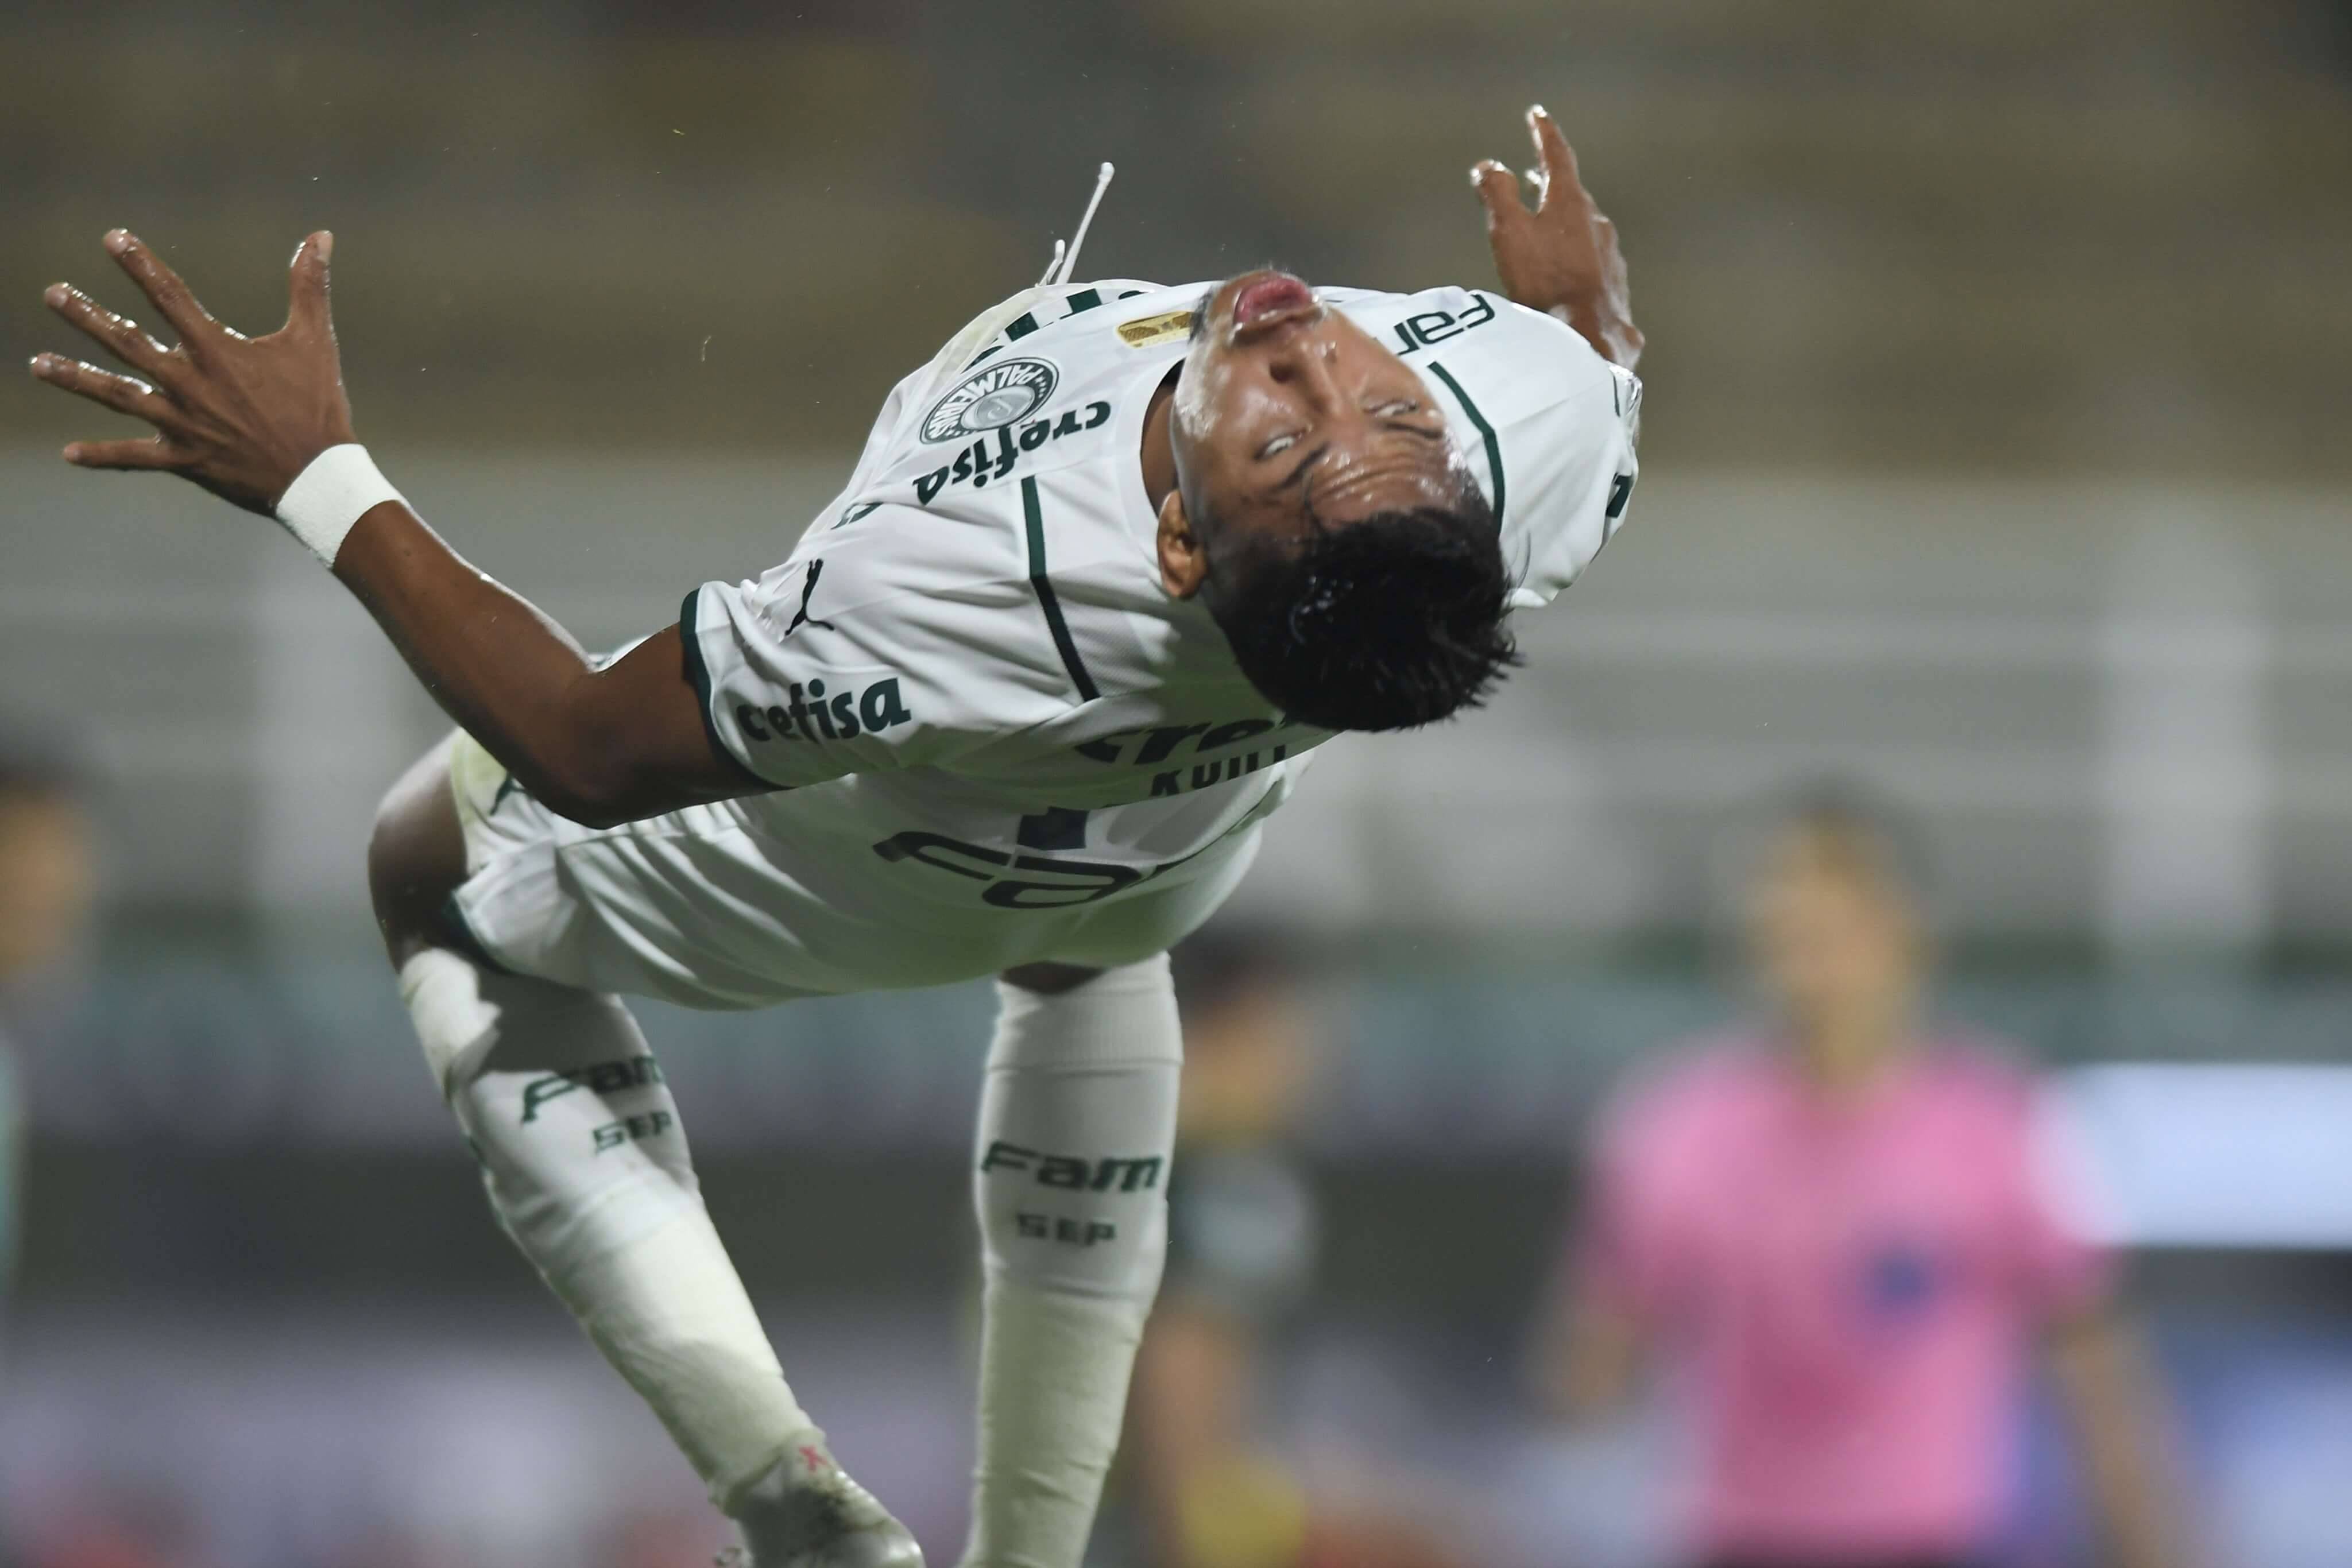 Defensa x Palmeiras. Foto: Reprodução / Twitter Conmebol